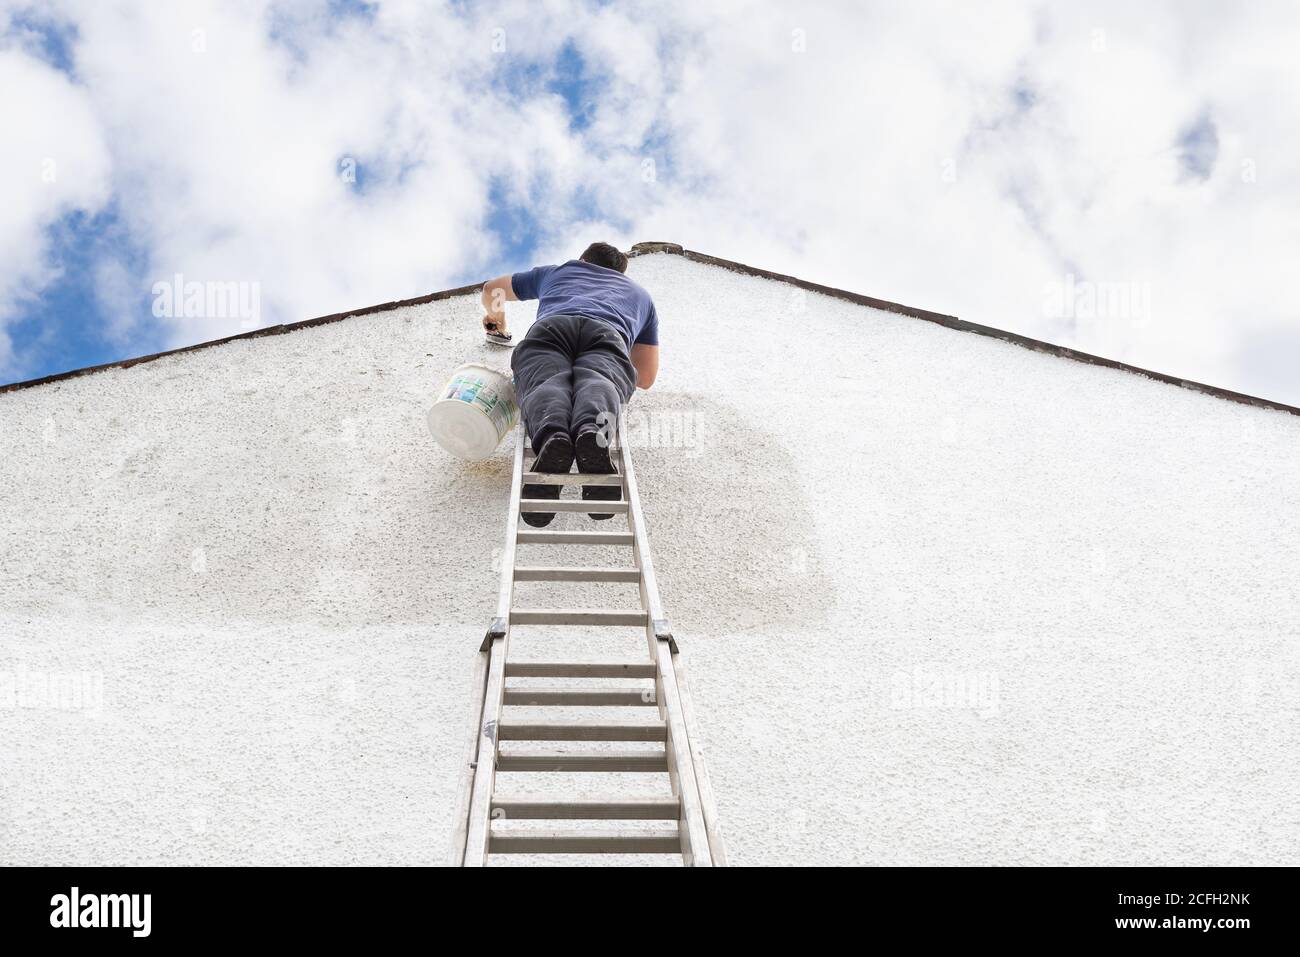 El hombre se levanta en lo alto de una escalera para pintar el lado de la casa de un color blanco fresco. Foto de stock